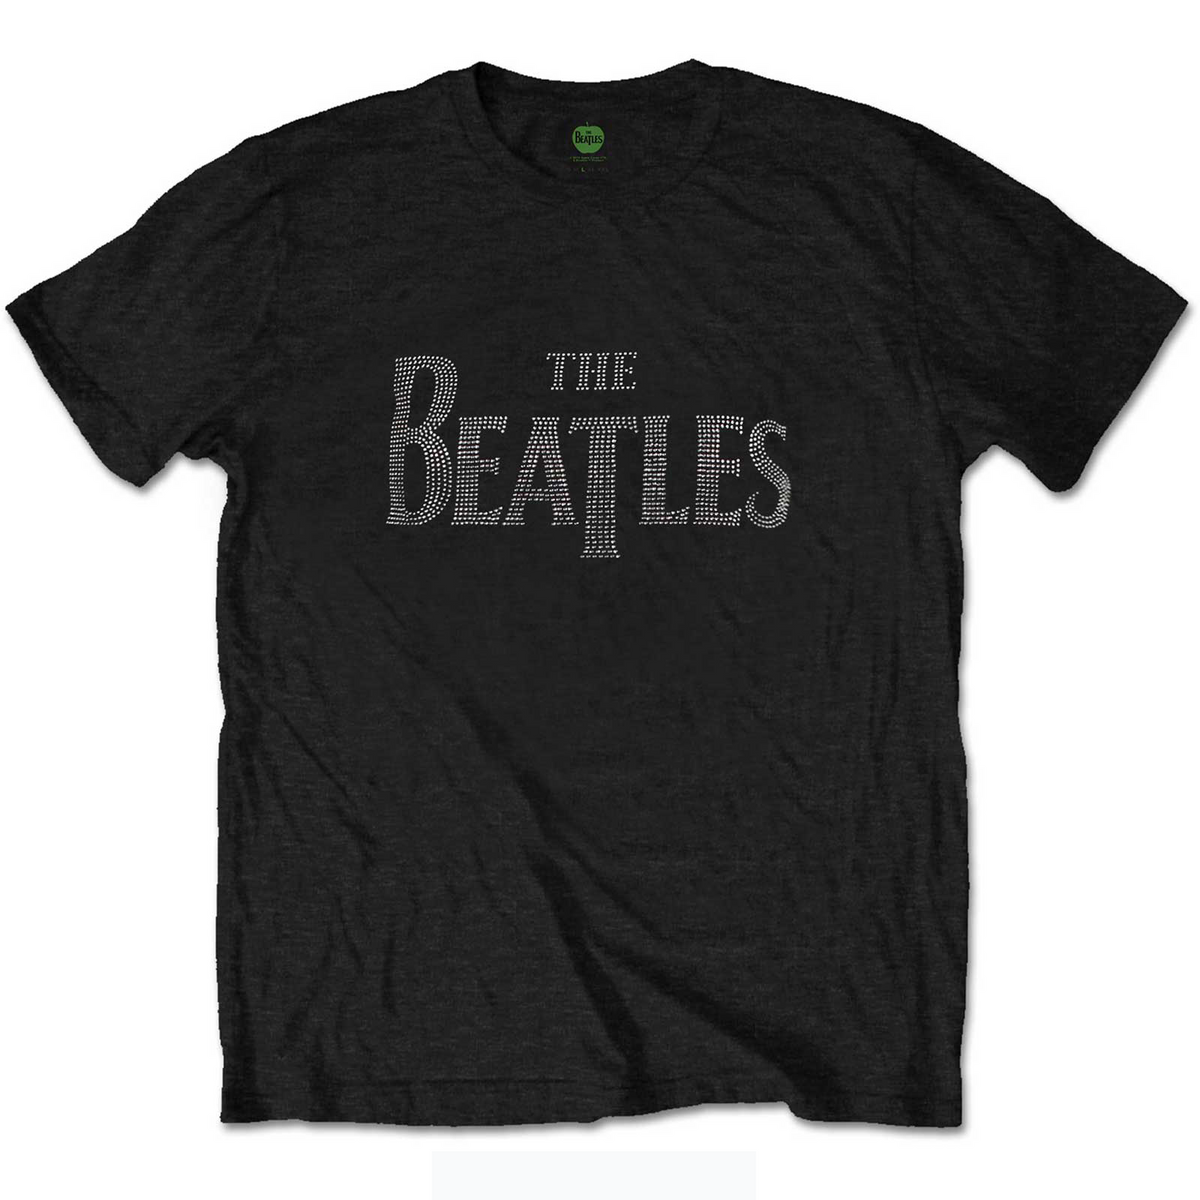 T-shirt The Beatles - Logo Drop T (Diamante) - Conception unisexe sous licence officielle